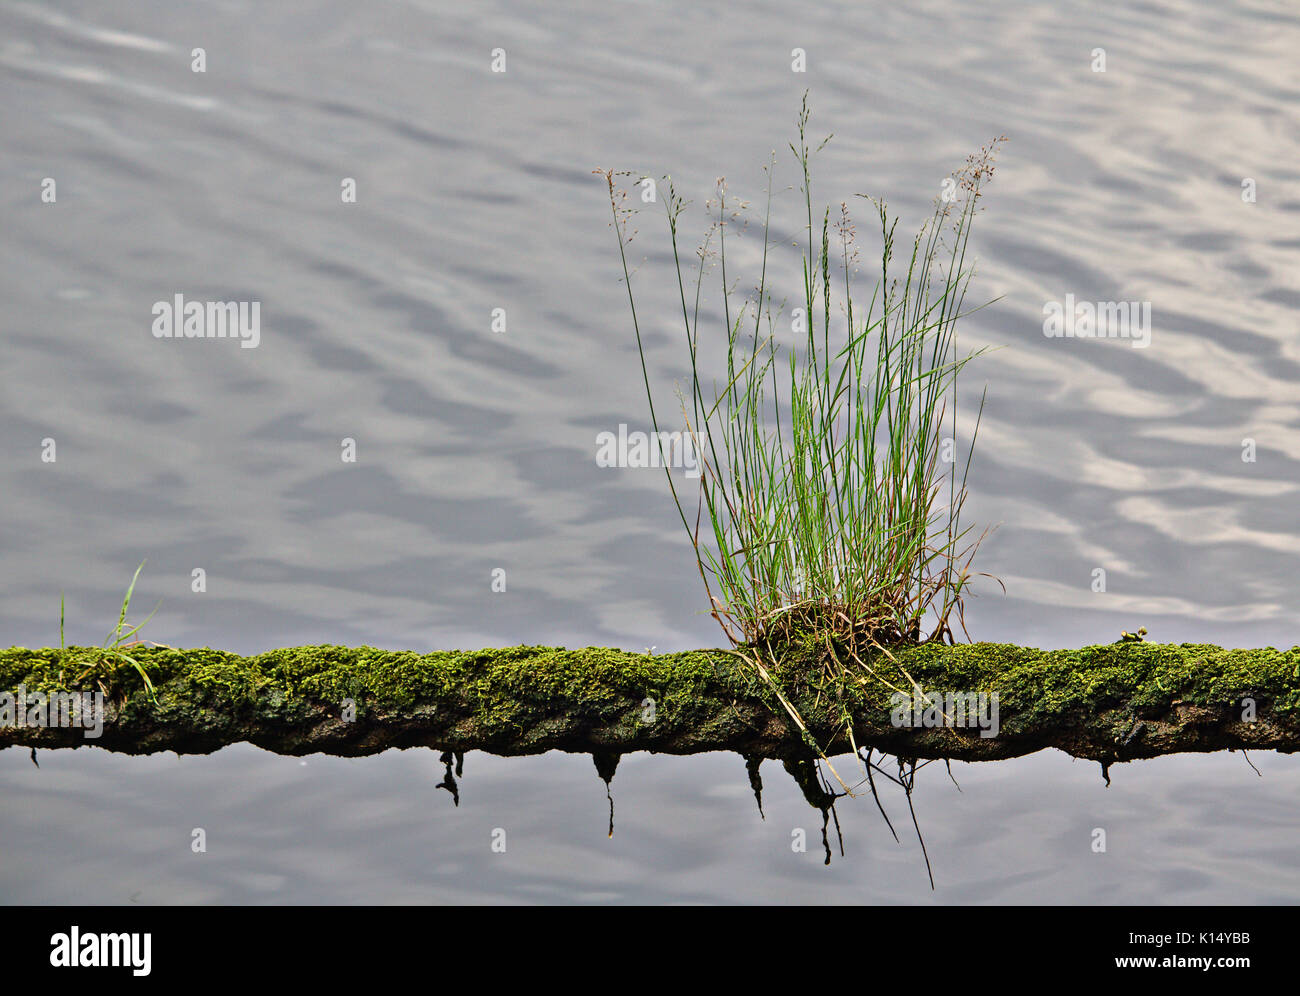 Erba verde e muschio che cresce su una linea di ormeggio con acqua in background Foto Stock